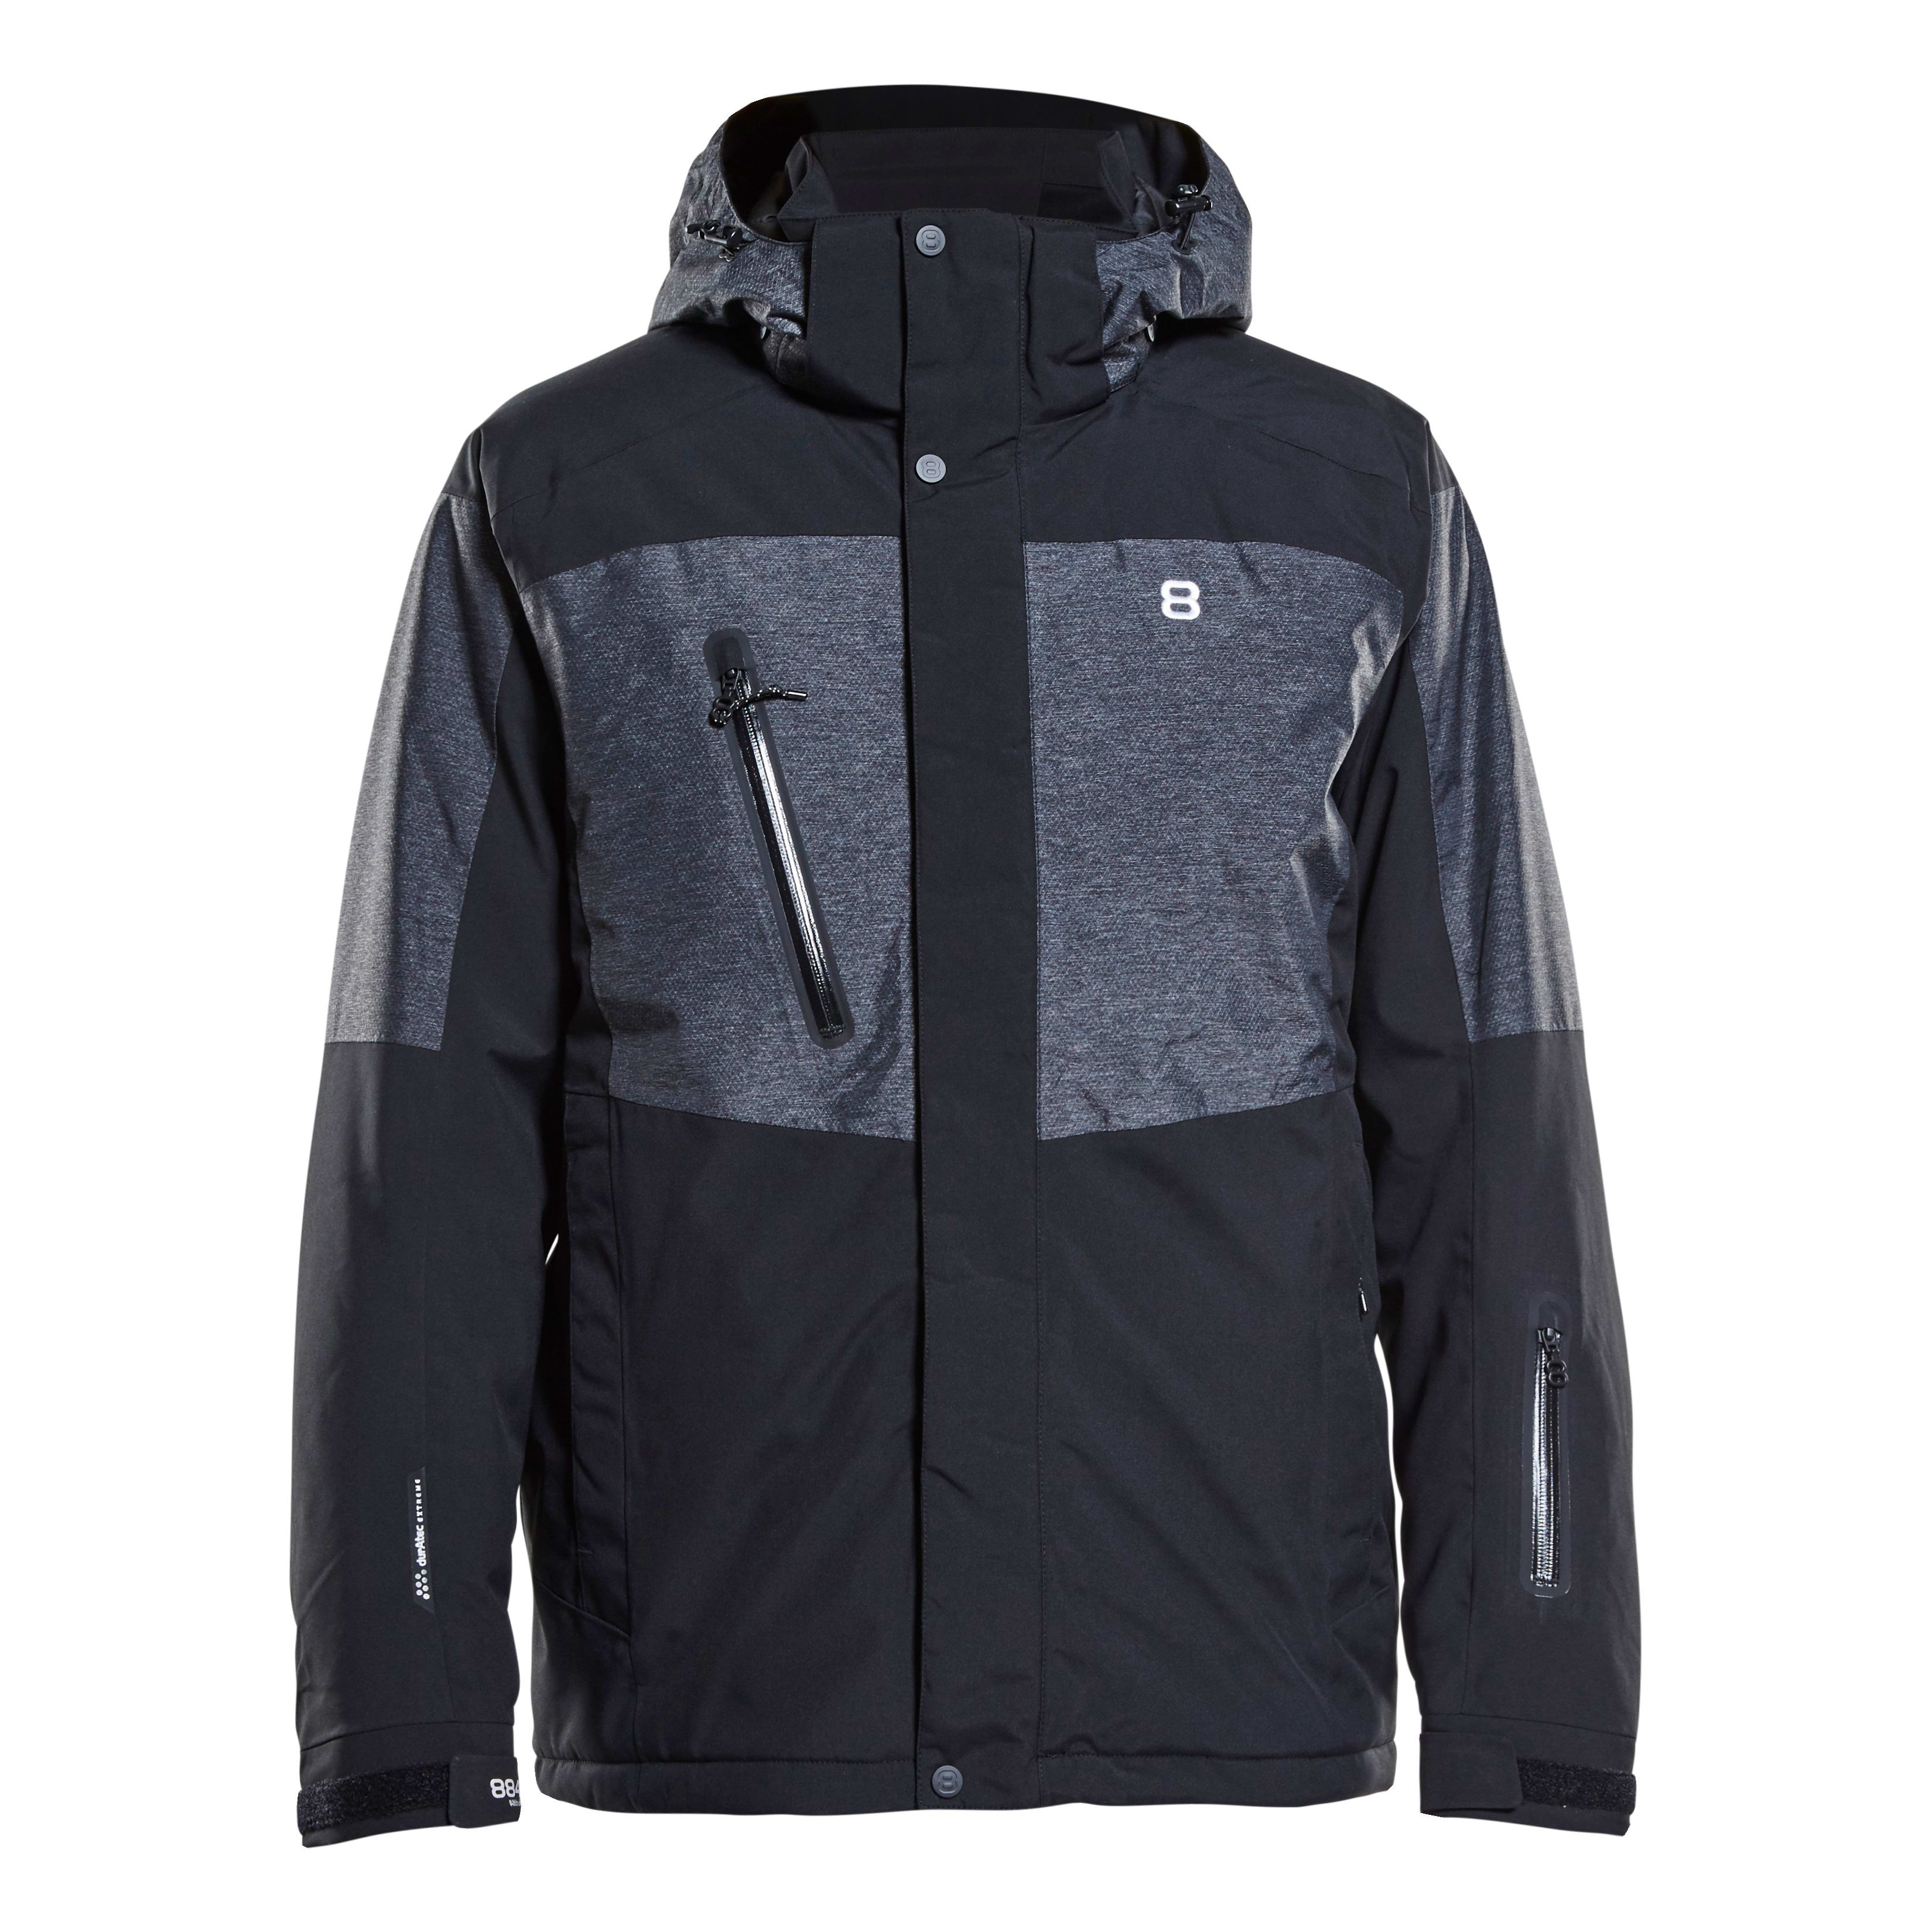 Forfølge plasticitet spænding Buy 8848 Altitude Westmount Jacket from Outnorth